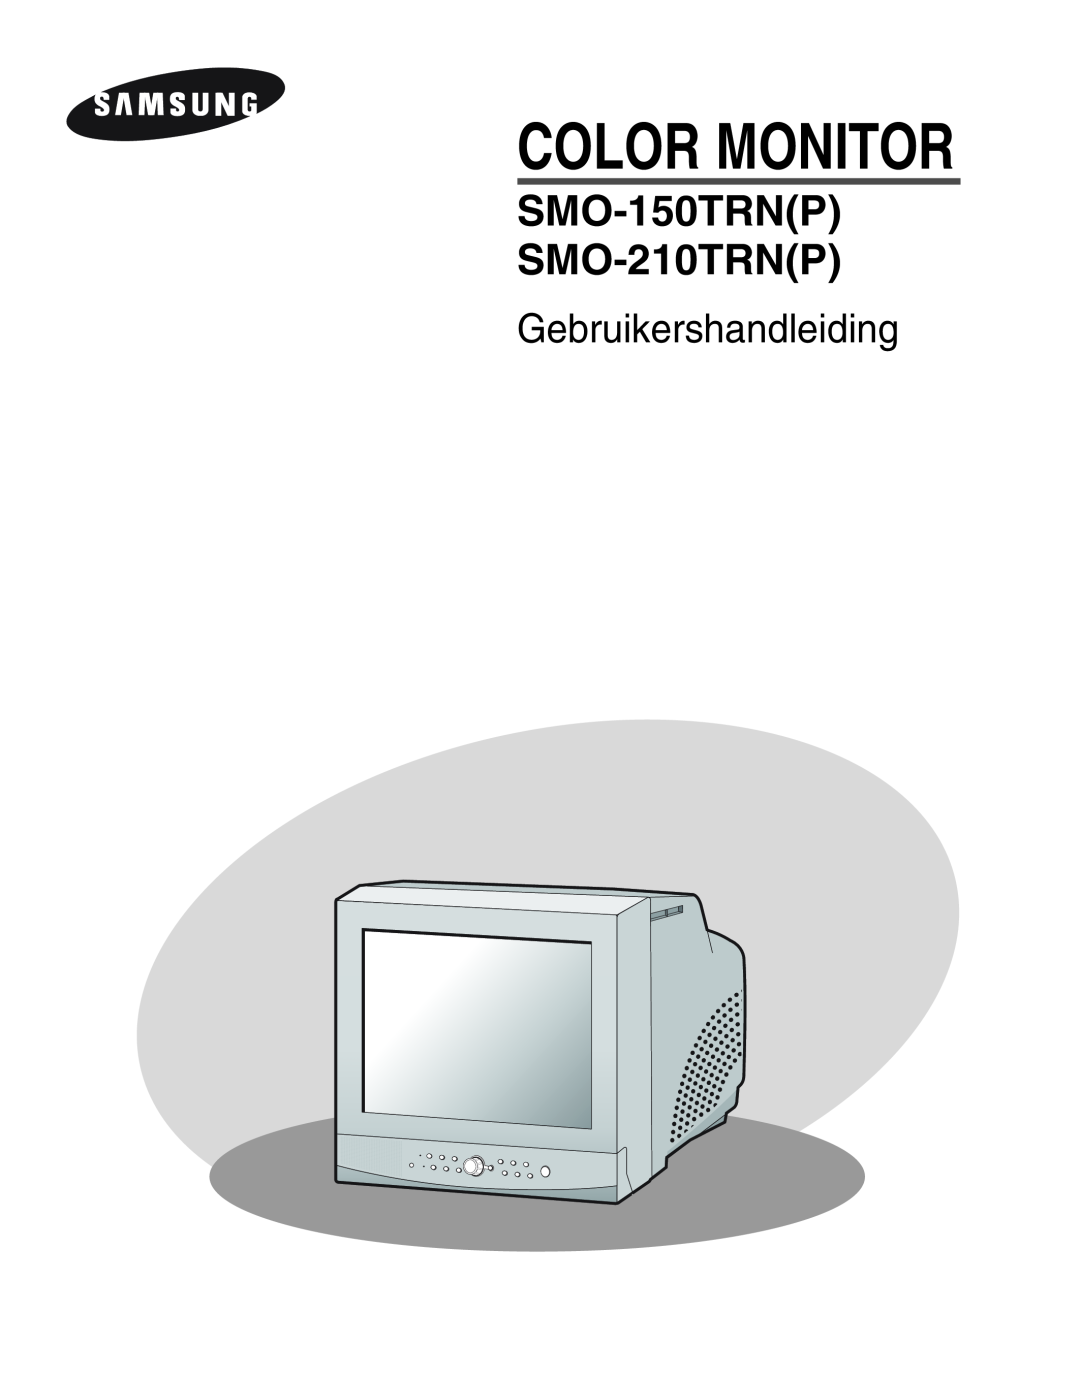 Samsung SMO-210MP/UMG, SMO-210TRP manual Gebruikershandleiding, Color Monitor, SMO-150TRNP SMO-210TRNP 